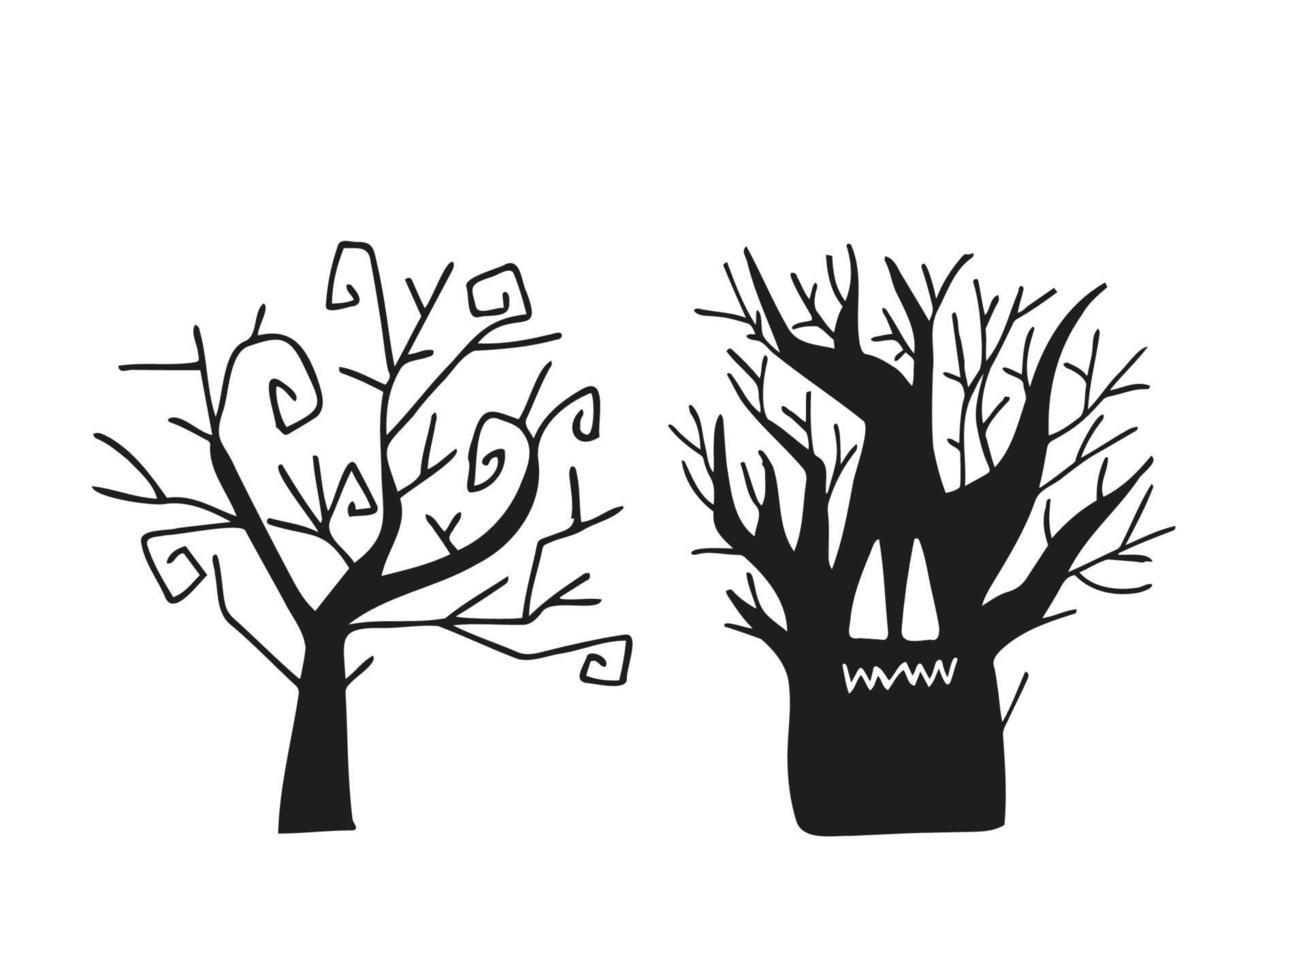 halloween 2022 - 31 ottobre. una festa tradizionale. Dolcetto o scherzetto. illustrazione vettoriale in stile doodle disegnato a mano. set di sagome di alberi spaventosi.